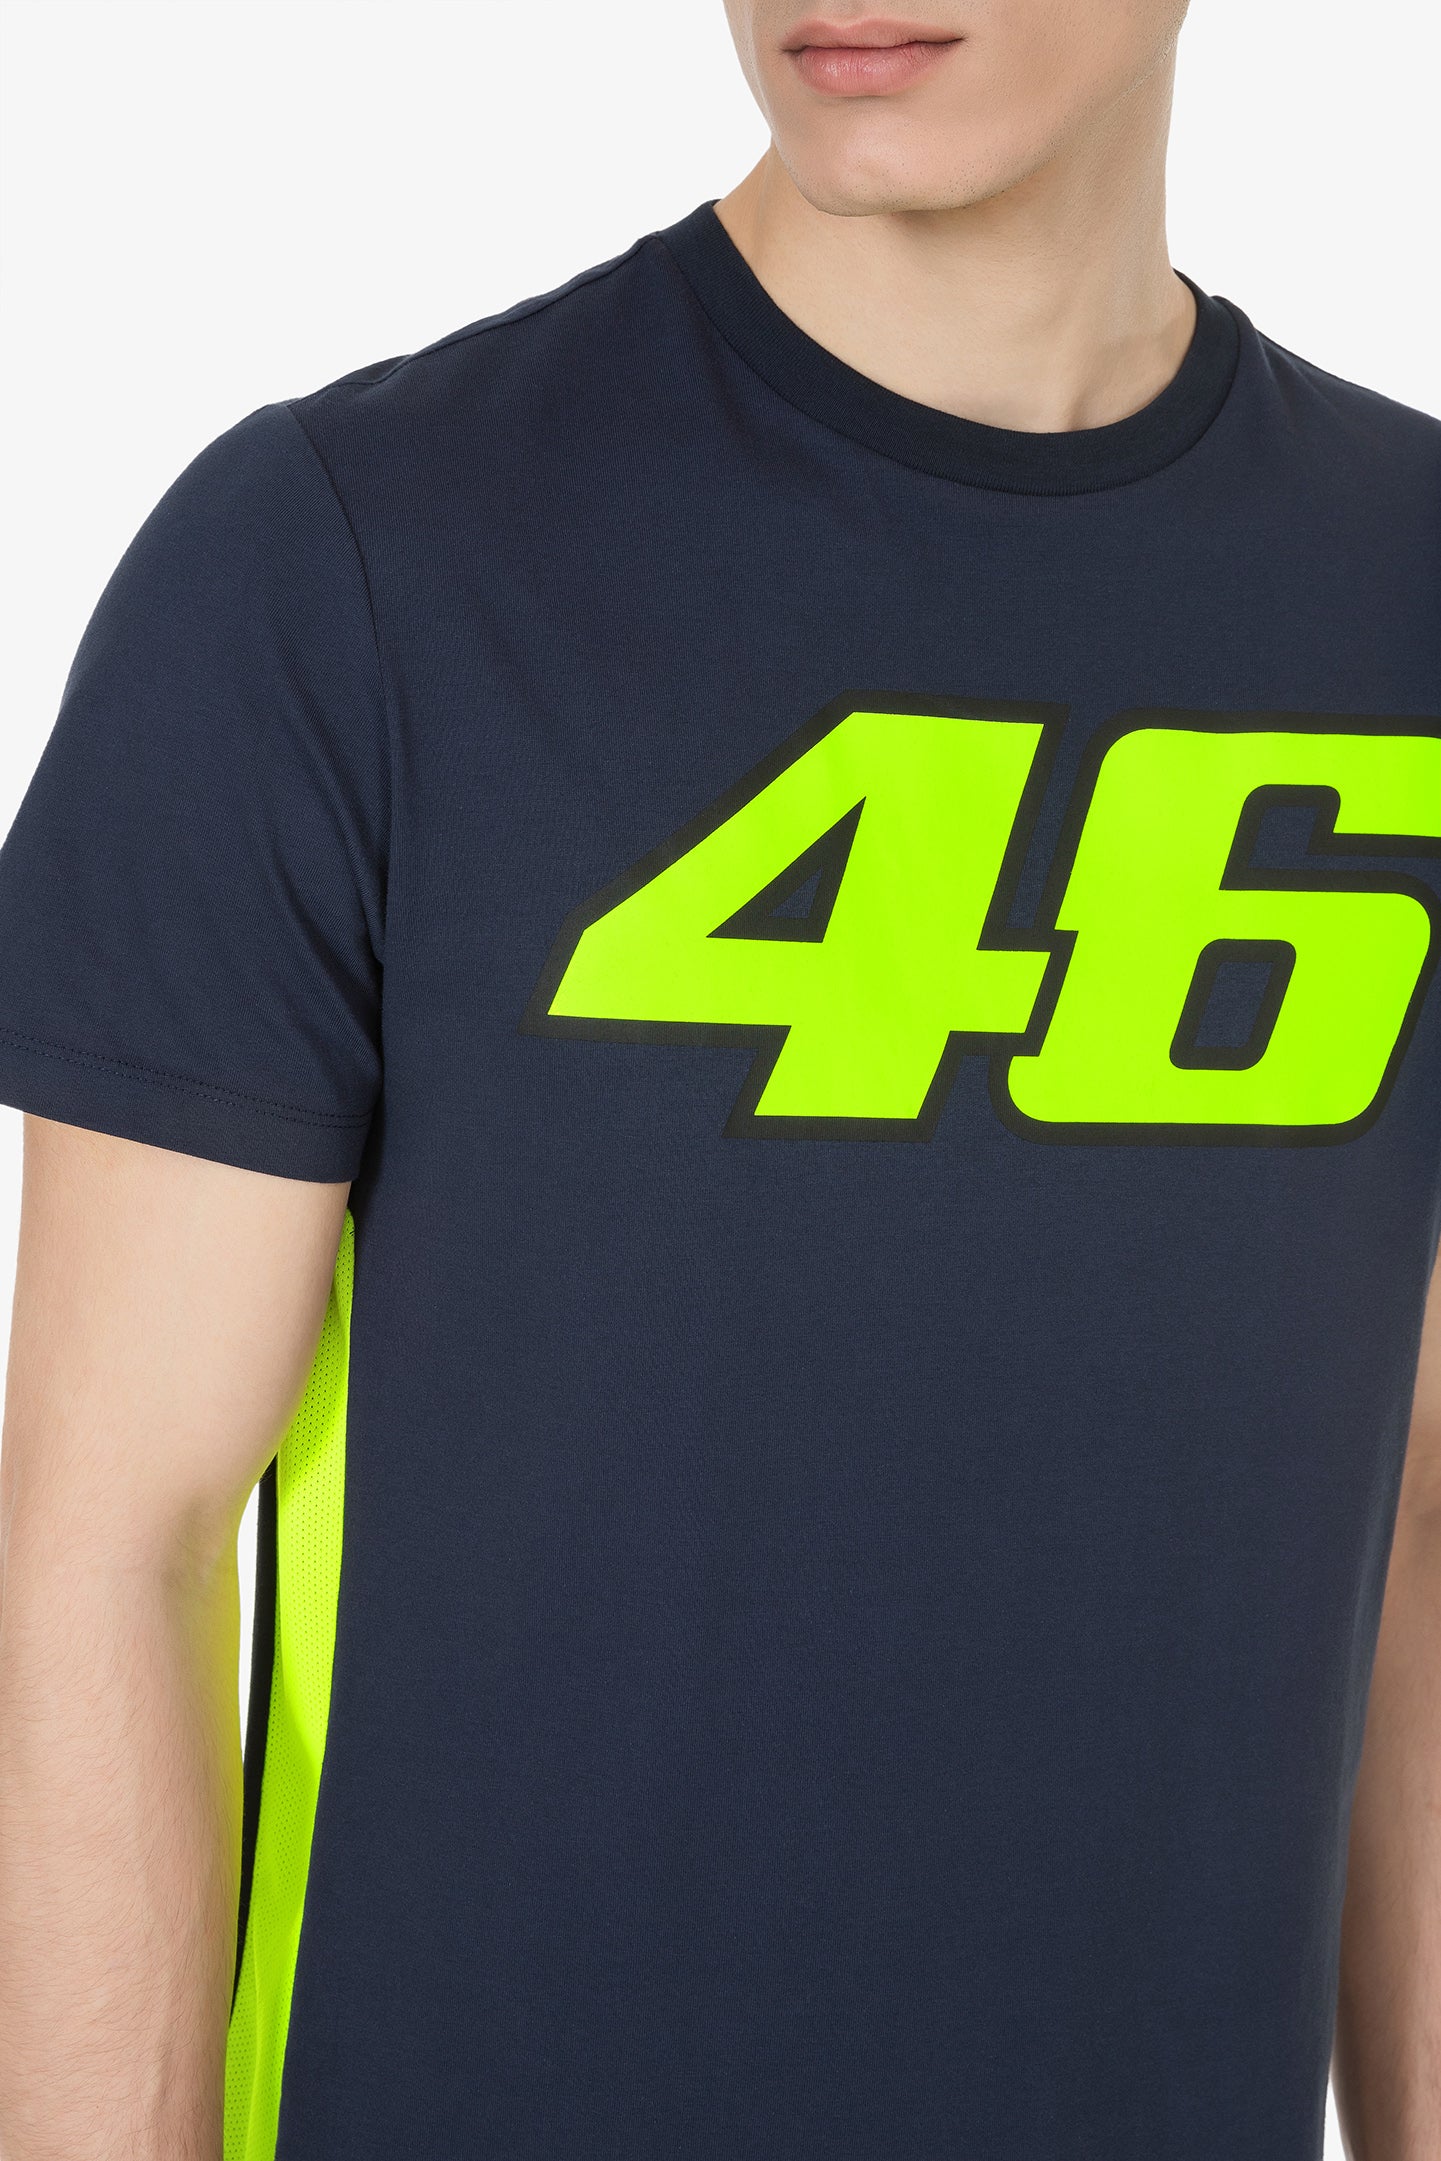 baai Bestuiver verloving 46 t-shirt